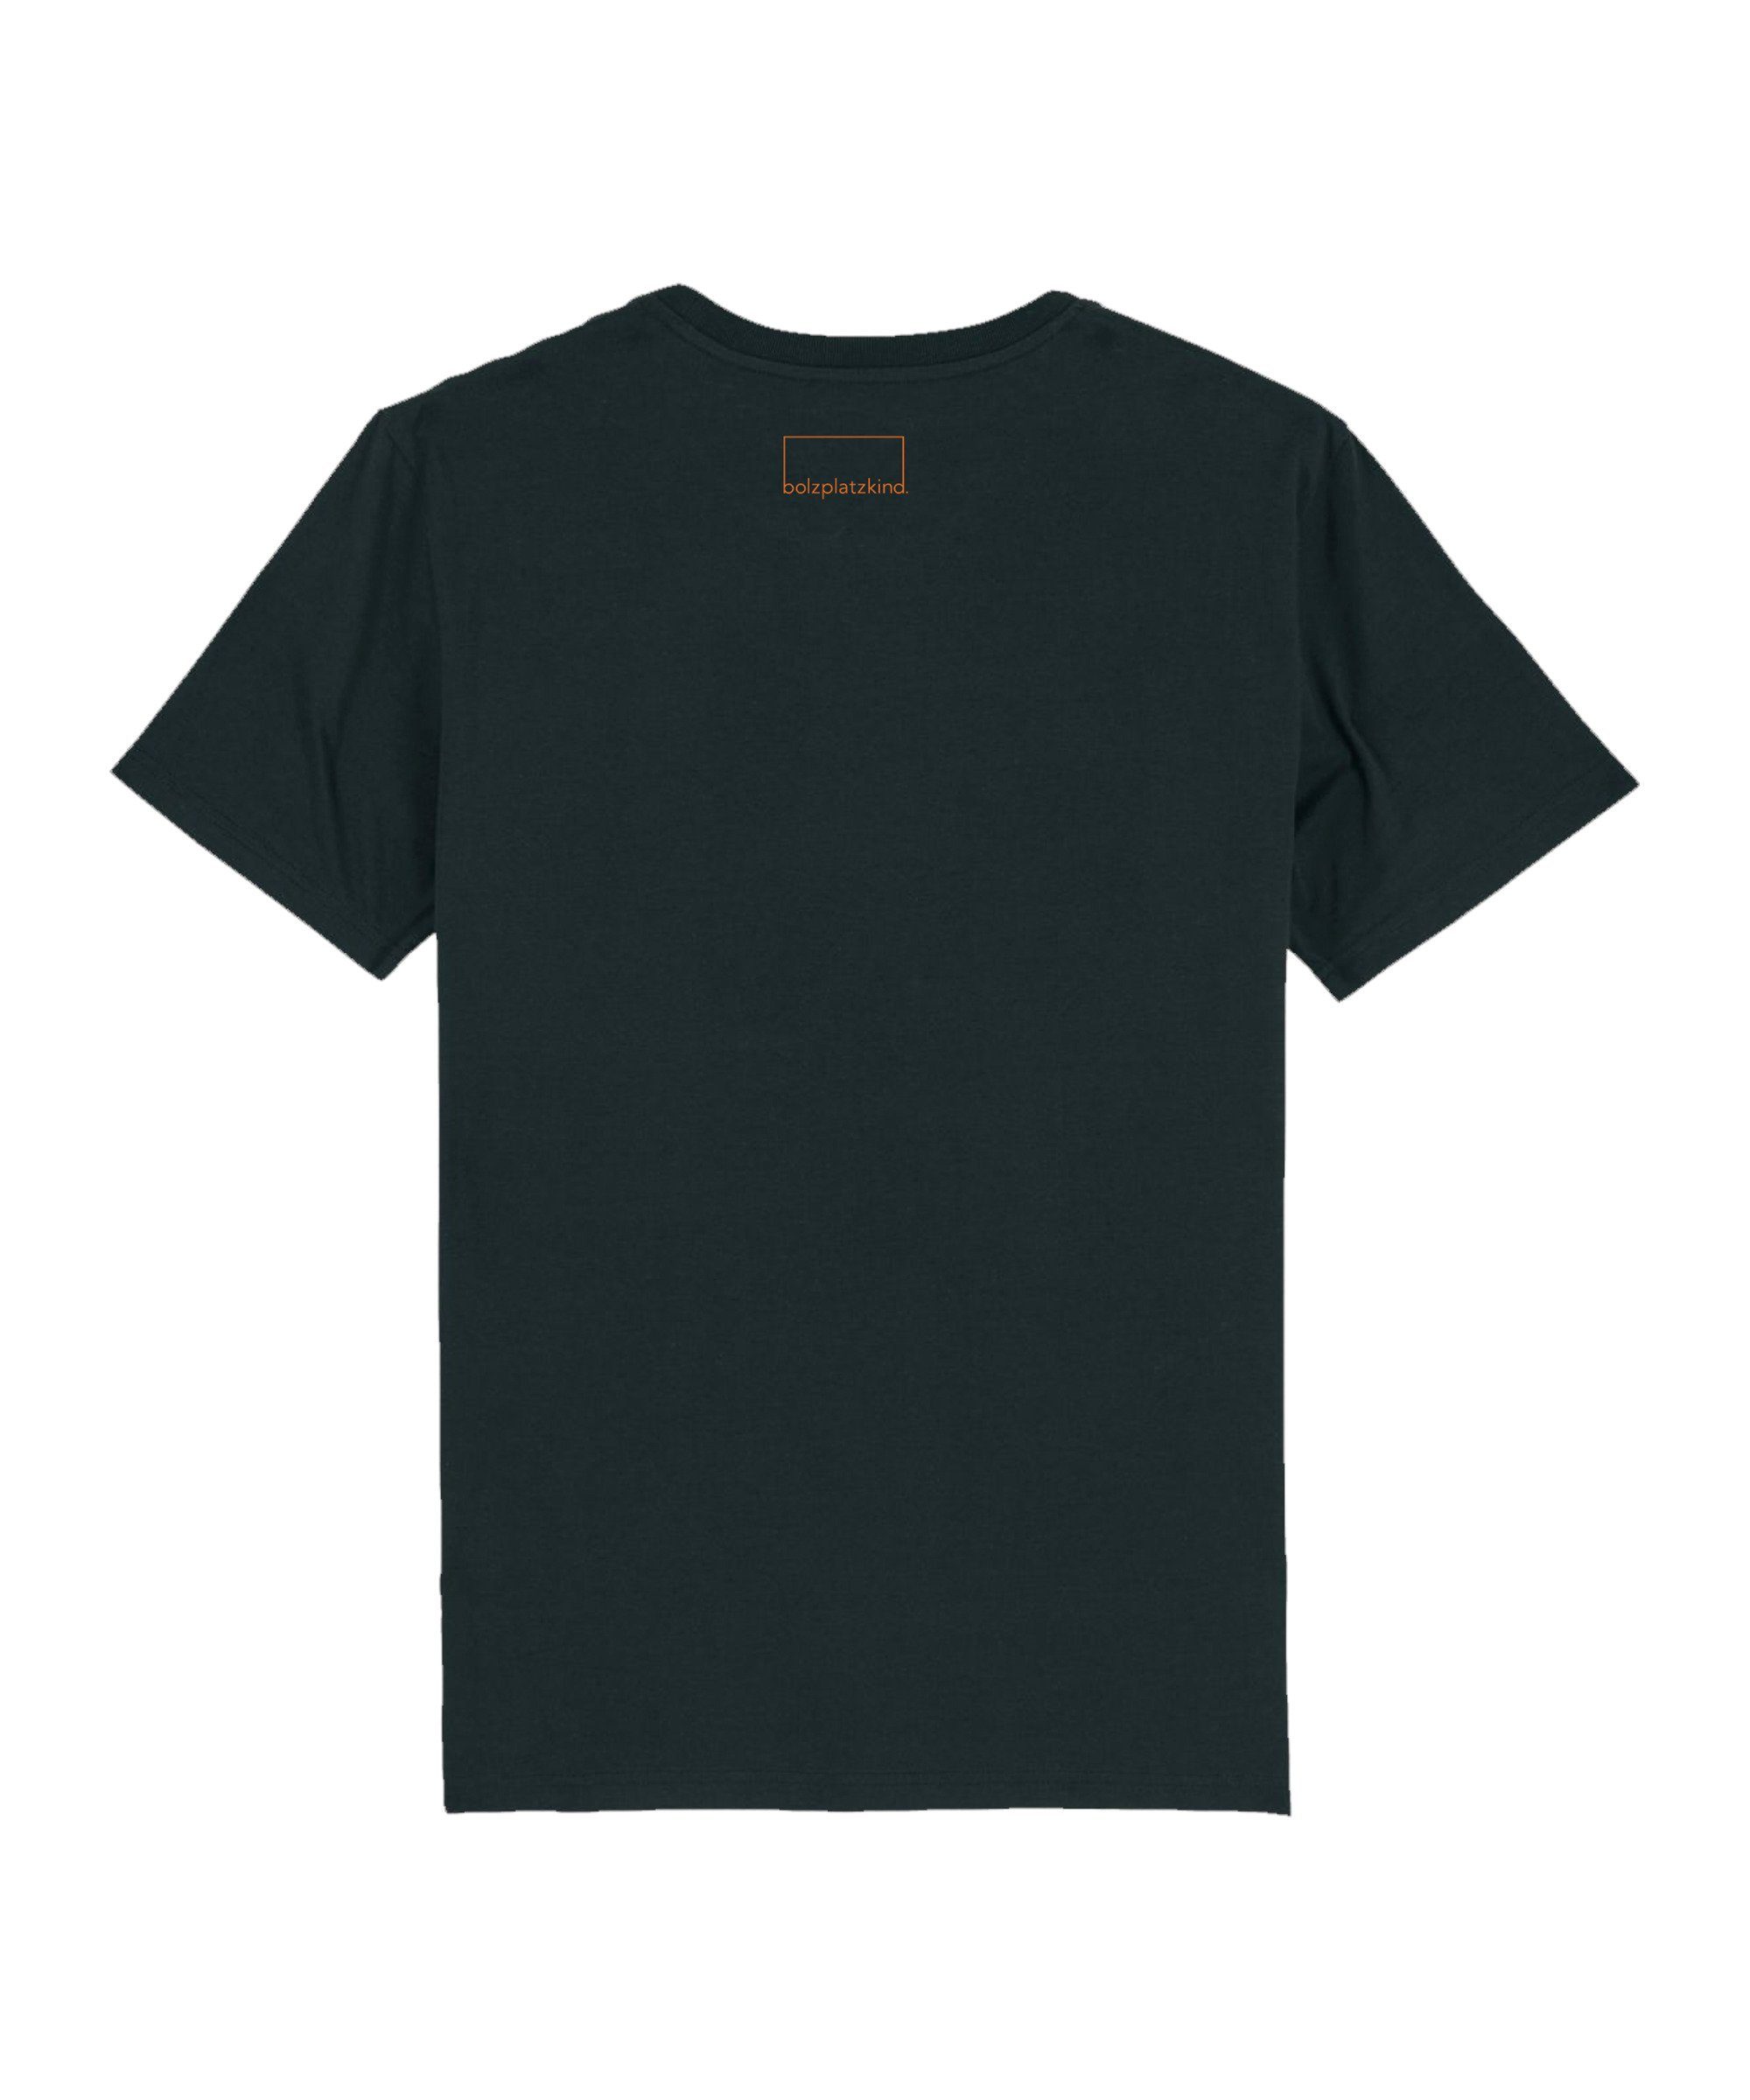 Bolzplatzkind T-Shirt "Free" T-Shirt Nachhaltiges schwarzorange Produkt